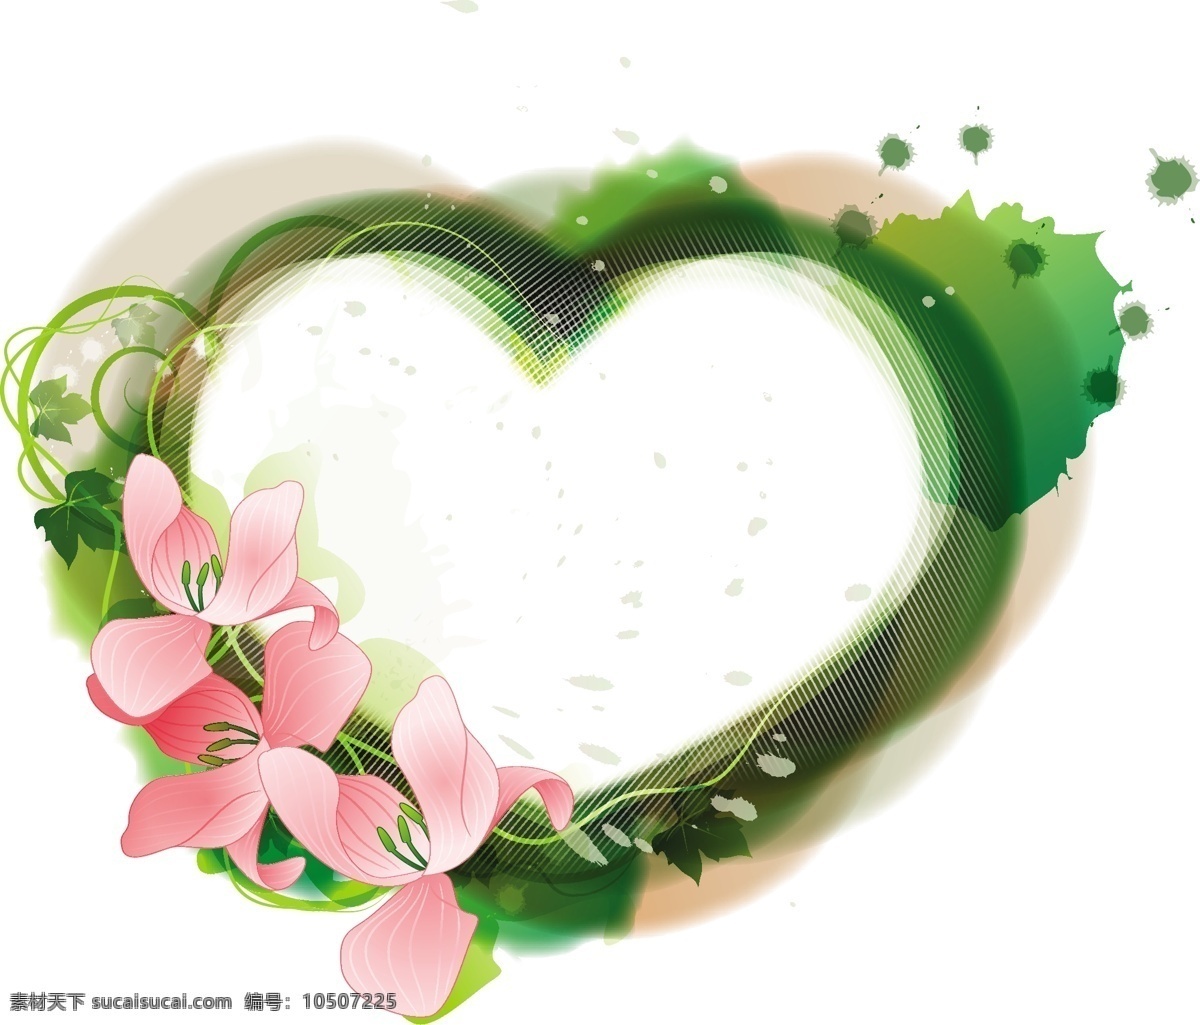 心形 花卉 植物 装饰 花朵素材 背景 手绘风格 花卉植物 花草素材 手绘 插画 爱心 花草树木 生物世界 矢量素材 白色